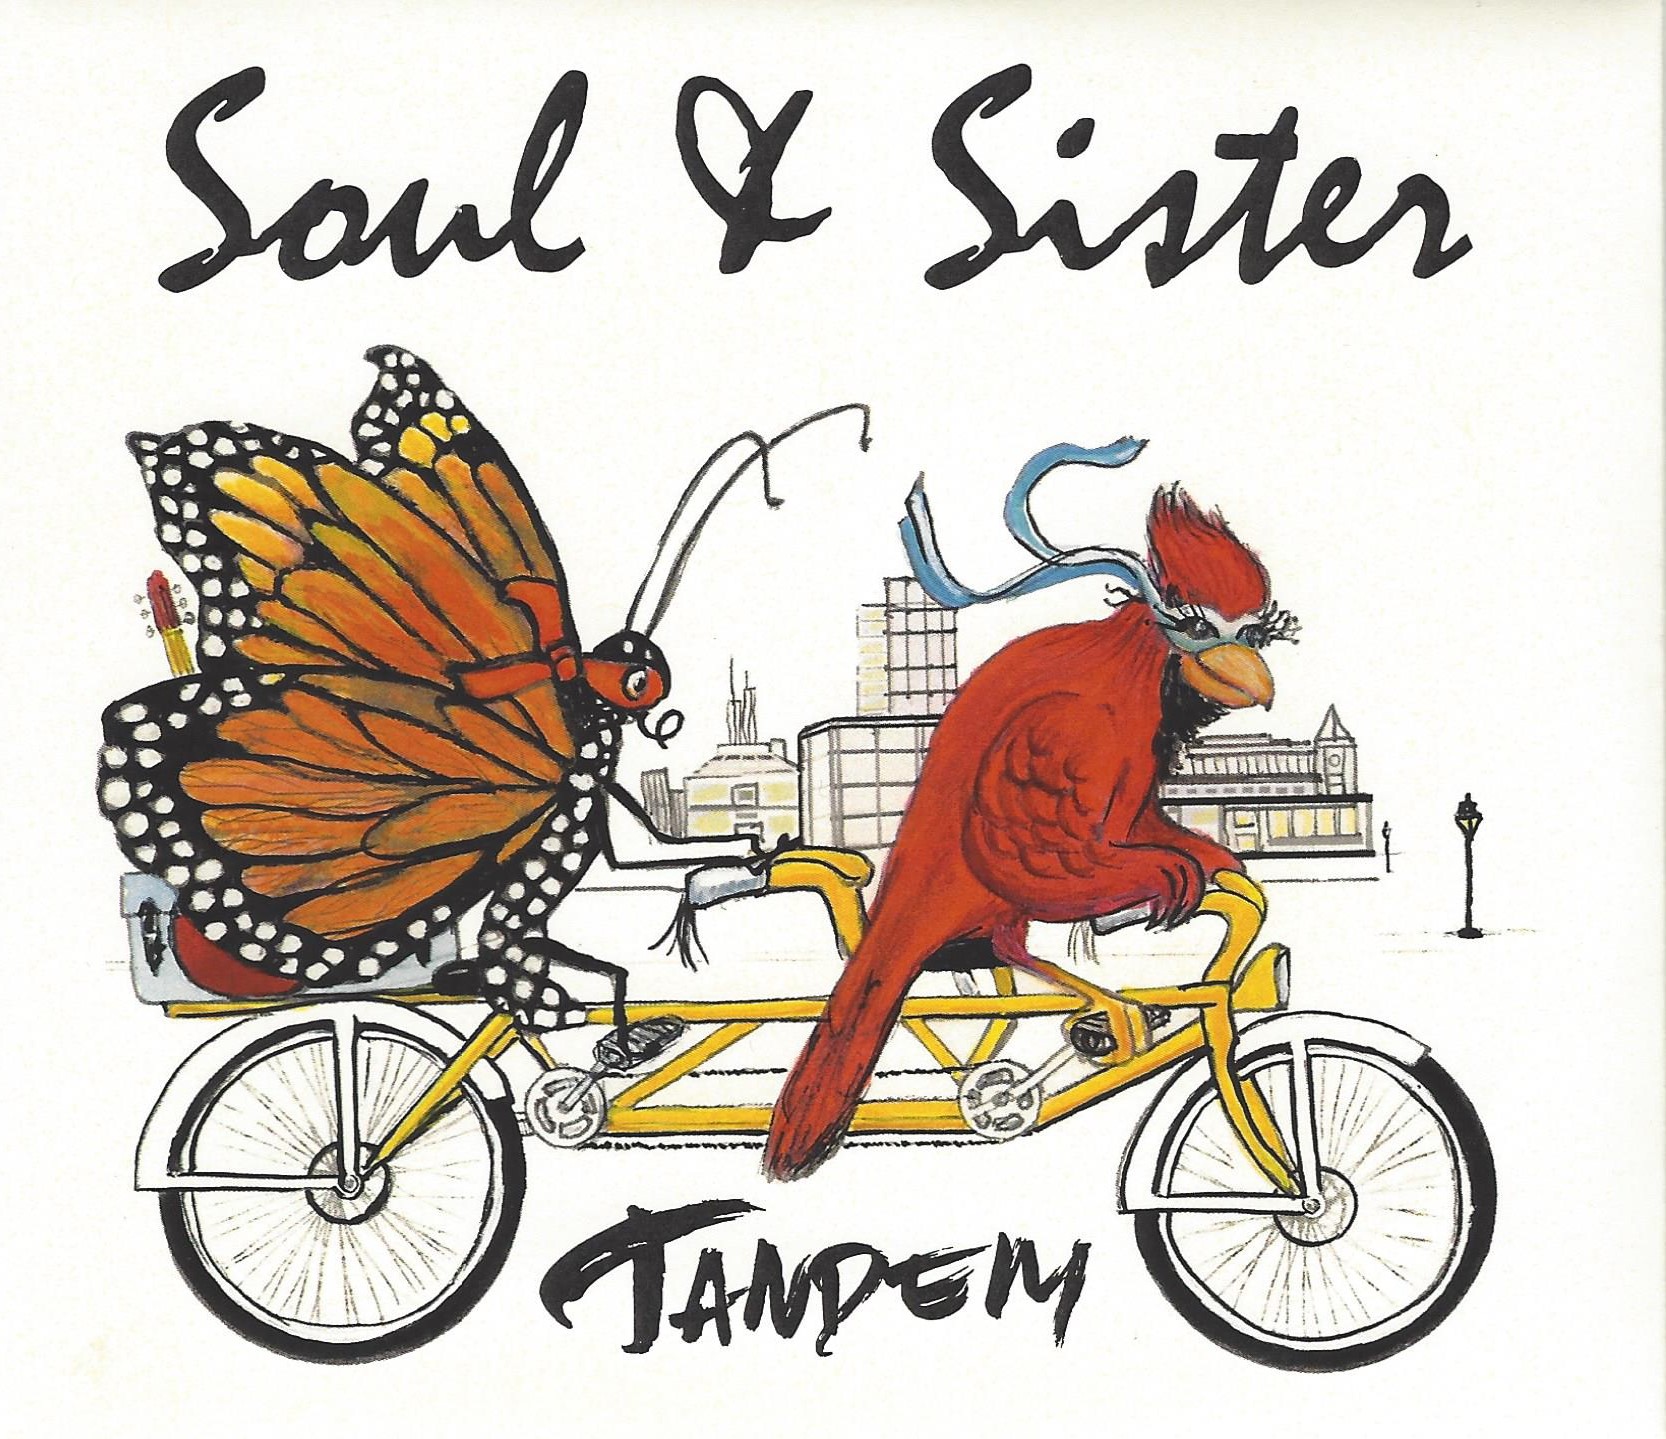 Soul & Sister – Tandem